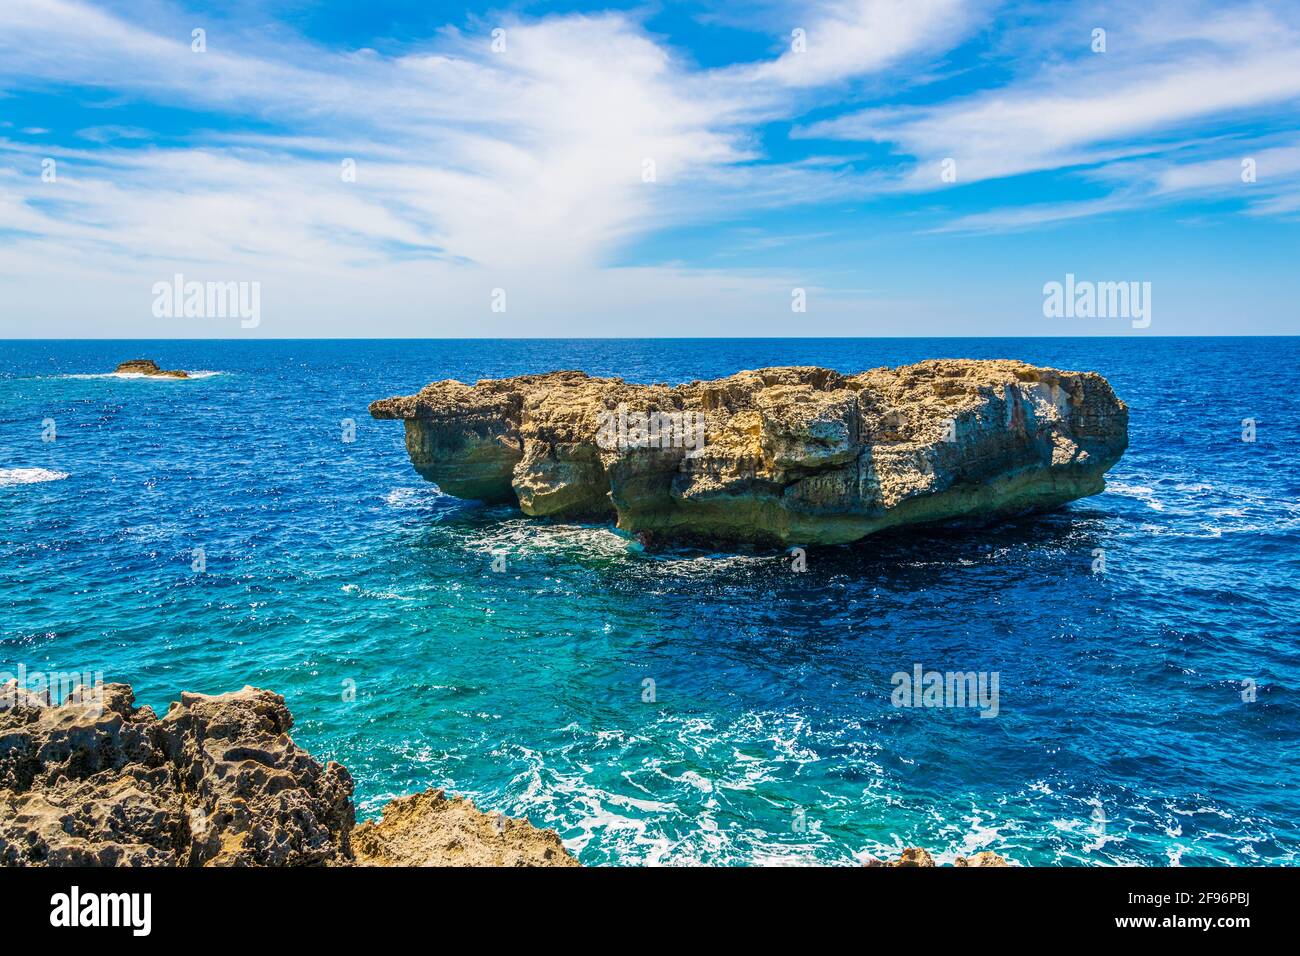 View of rugged seacoast near Dwejra point, Gozo, Malta Stock Photo